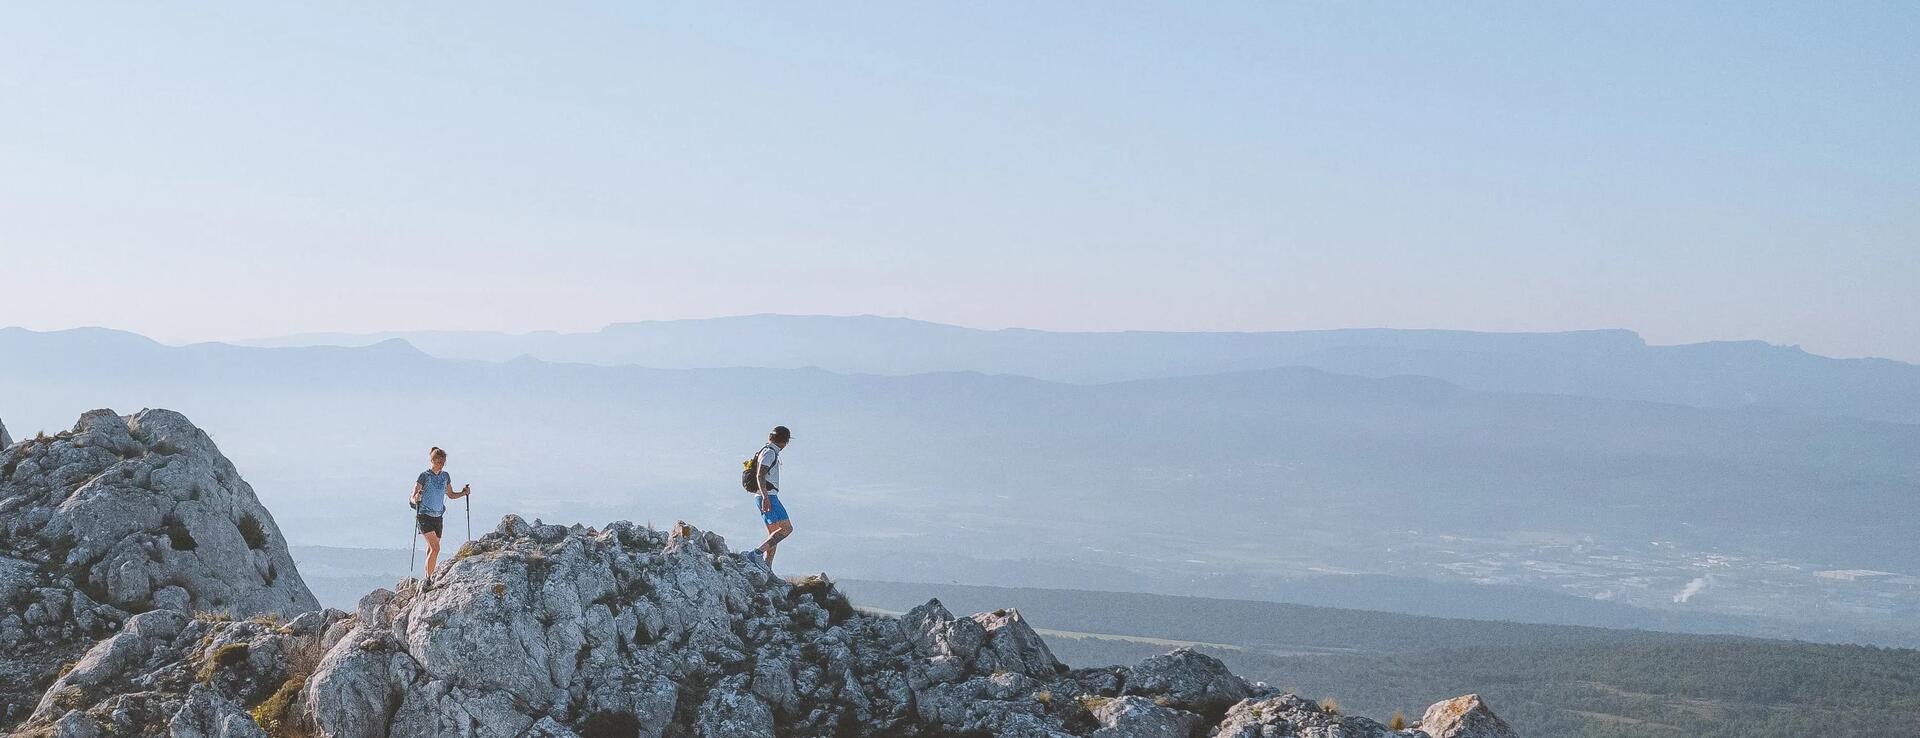 Photo de deux randonneurs sur un mont rocheux